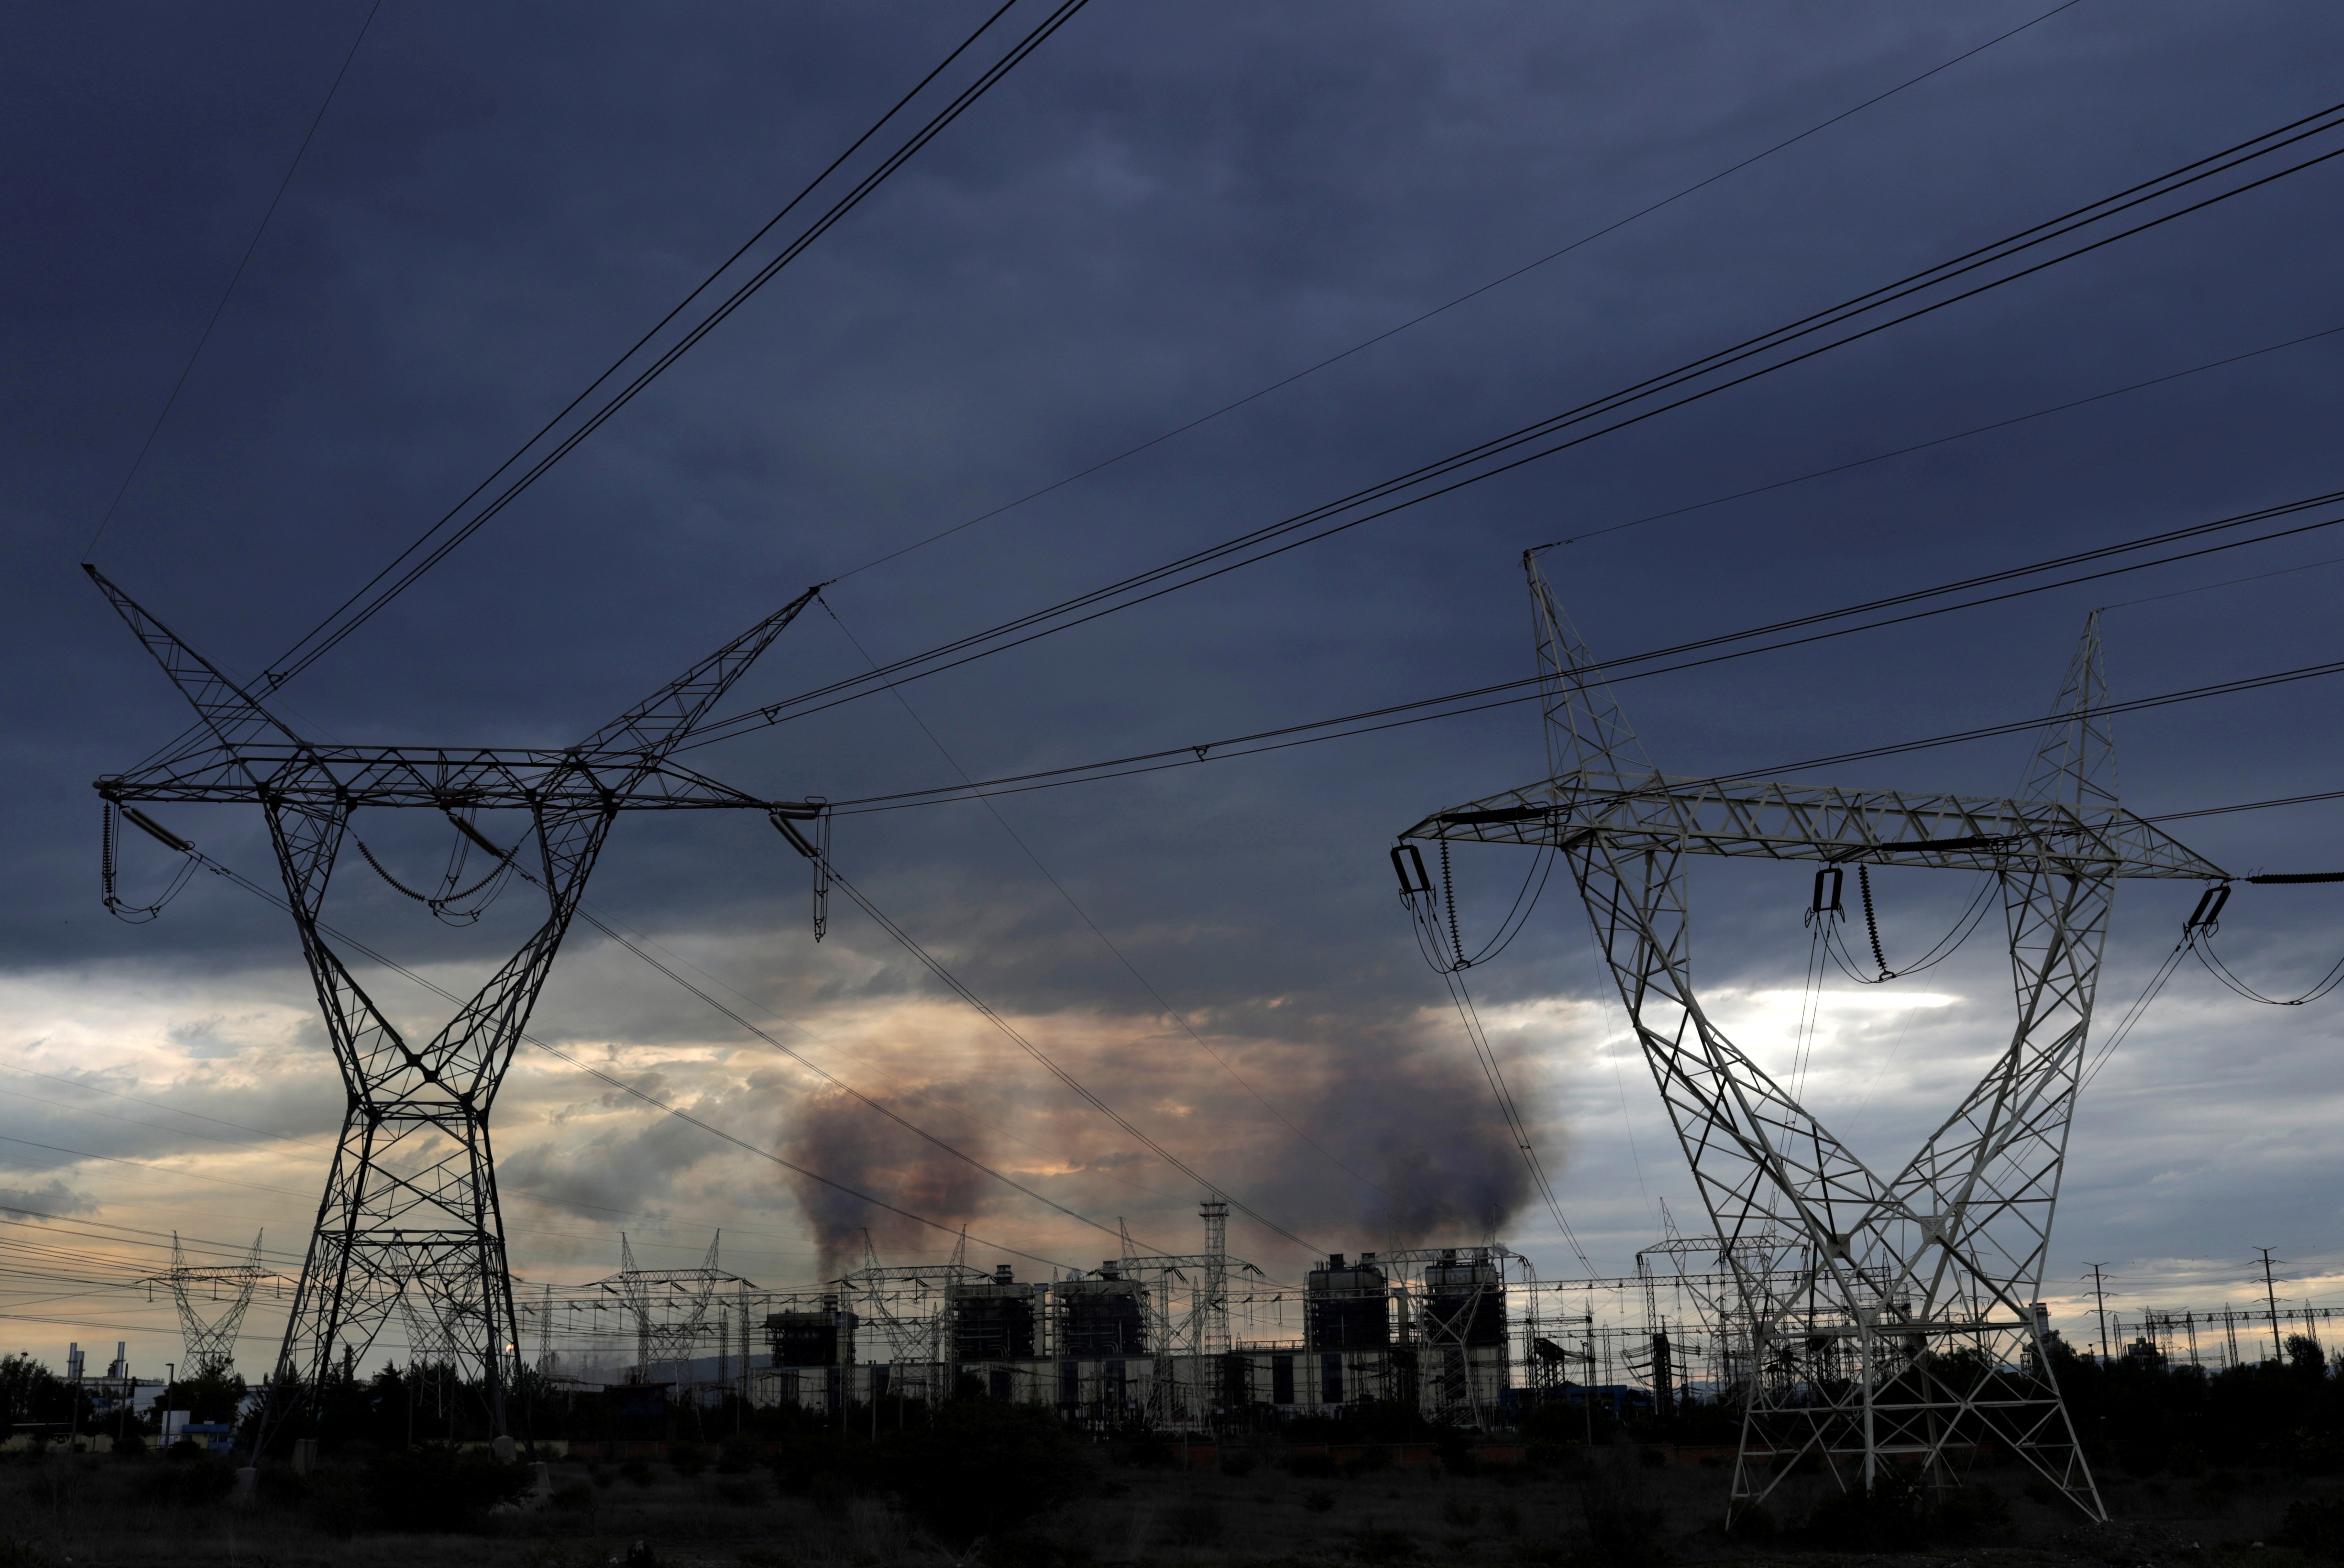 México en riesgo de monopolizar la industria eléctrica: Coparmex
REUTERS/Henry Romero